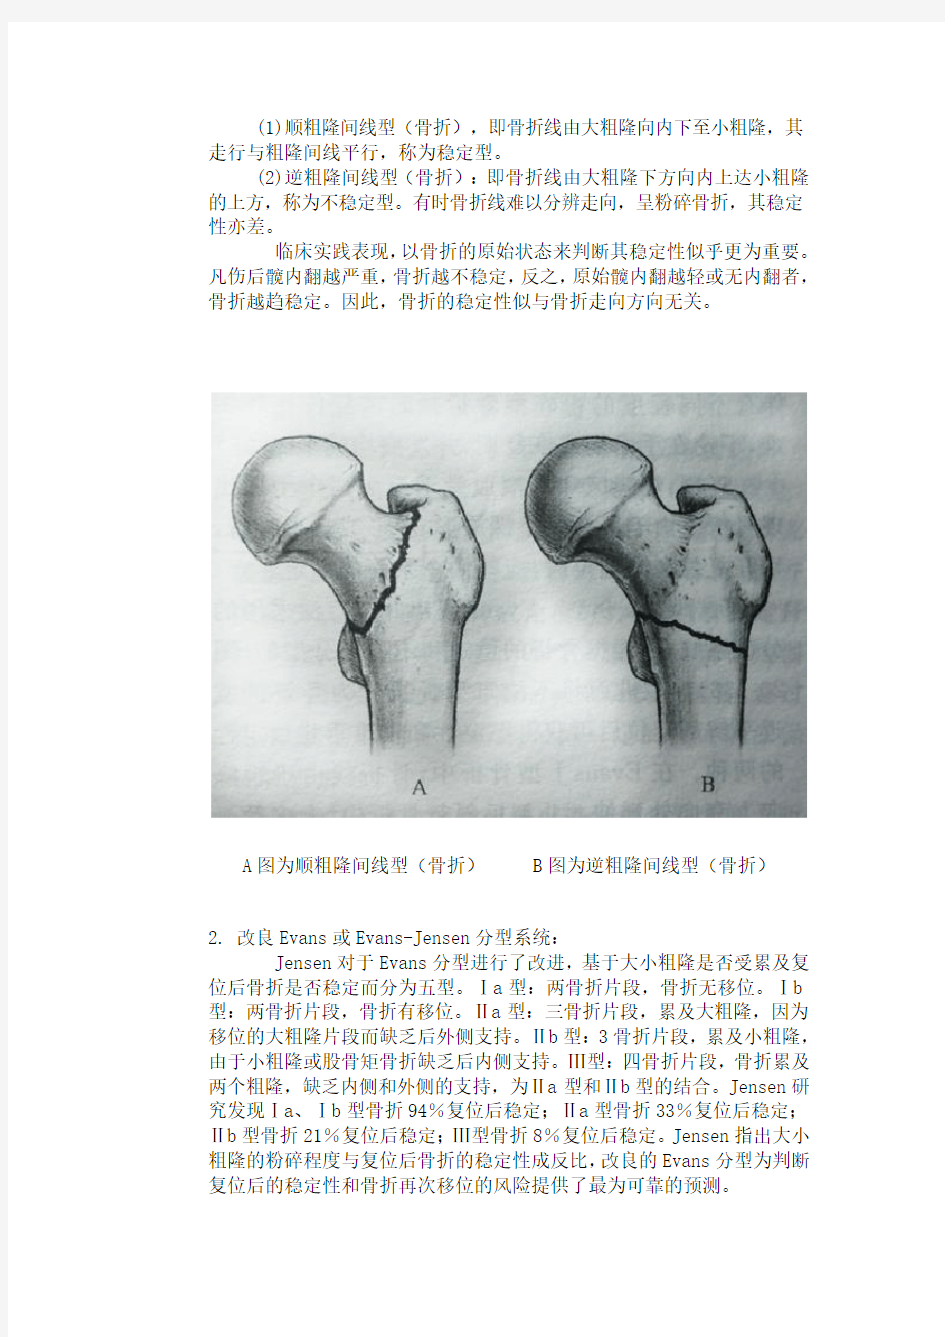 股骨粗隆间骨折(intertrochanteric fracture)